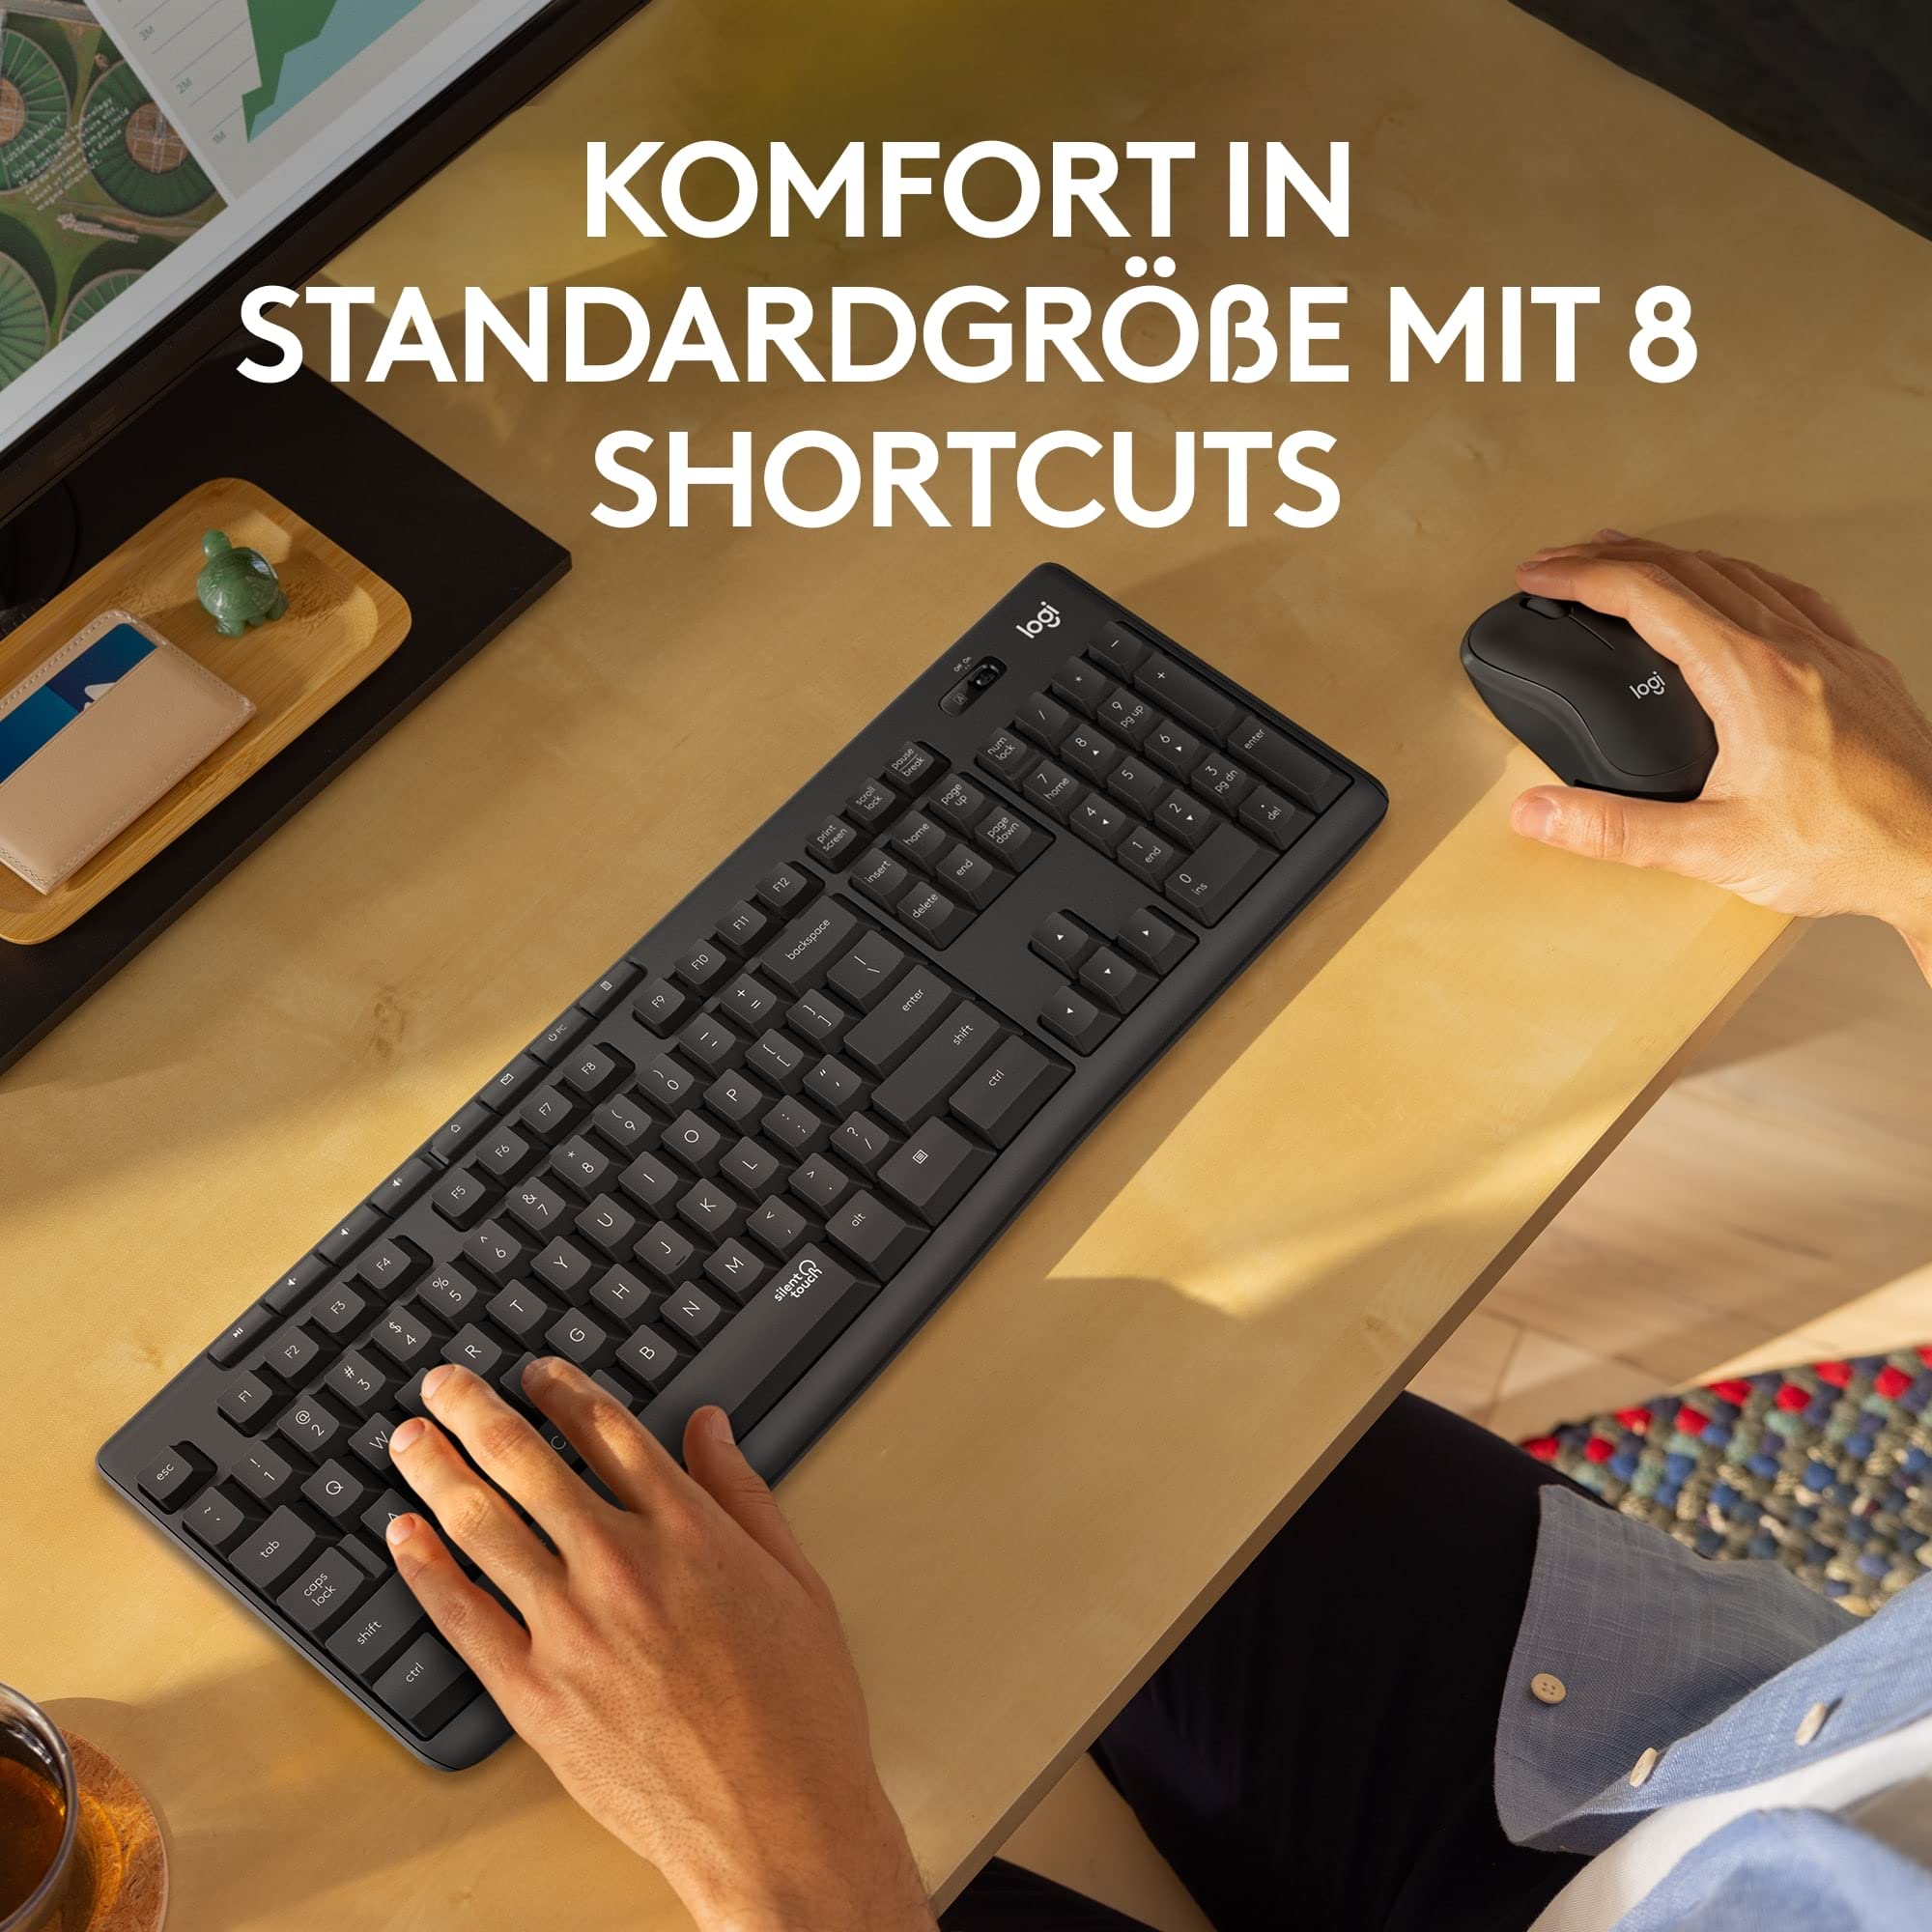 Logitech MK295 kabelloses Tastatur-Maus-Set mit SilentTouch-Technologie, Shortcut-Tasten, optischer Spurführung, Nano USB-Empfänger, verzögerungsfreier Drahtlosverbindung, QWERTZ layout - Graphit